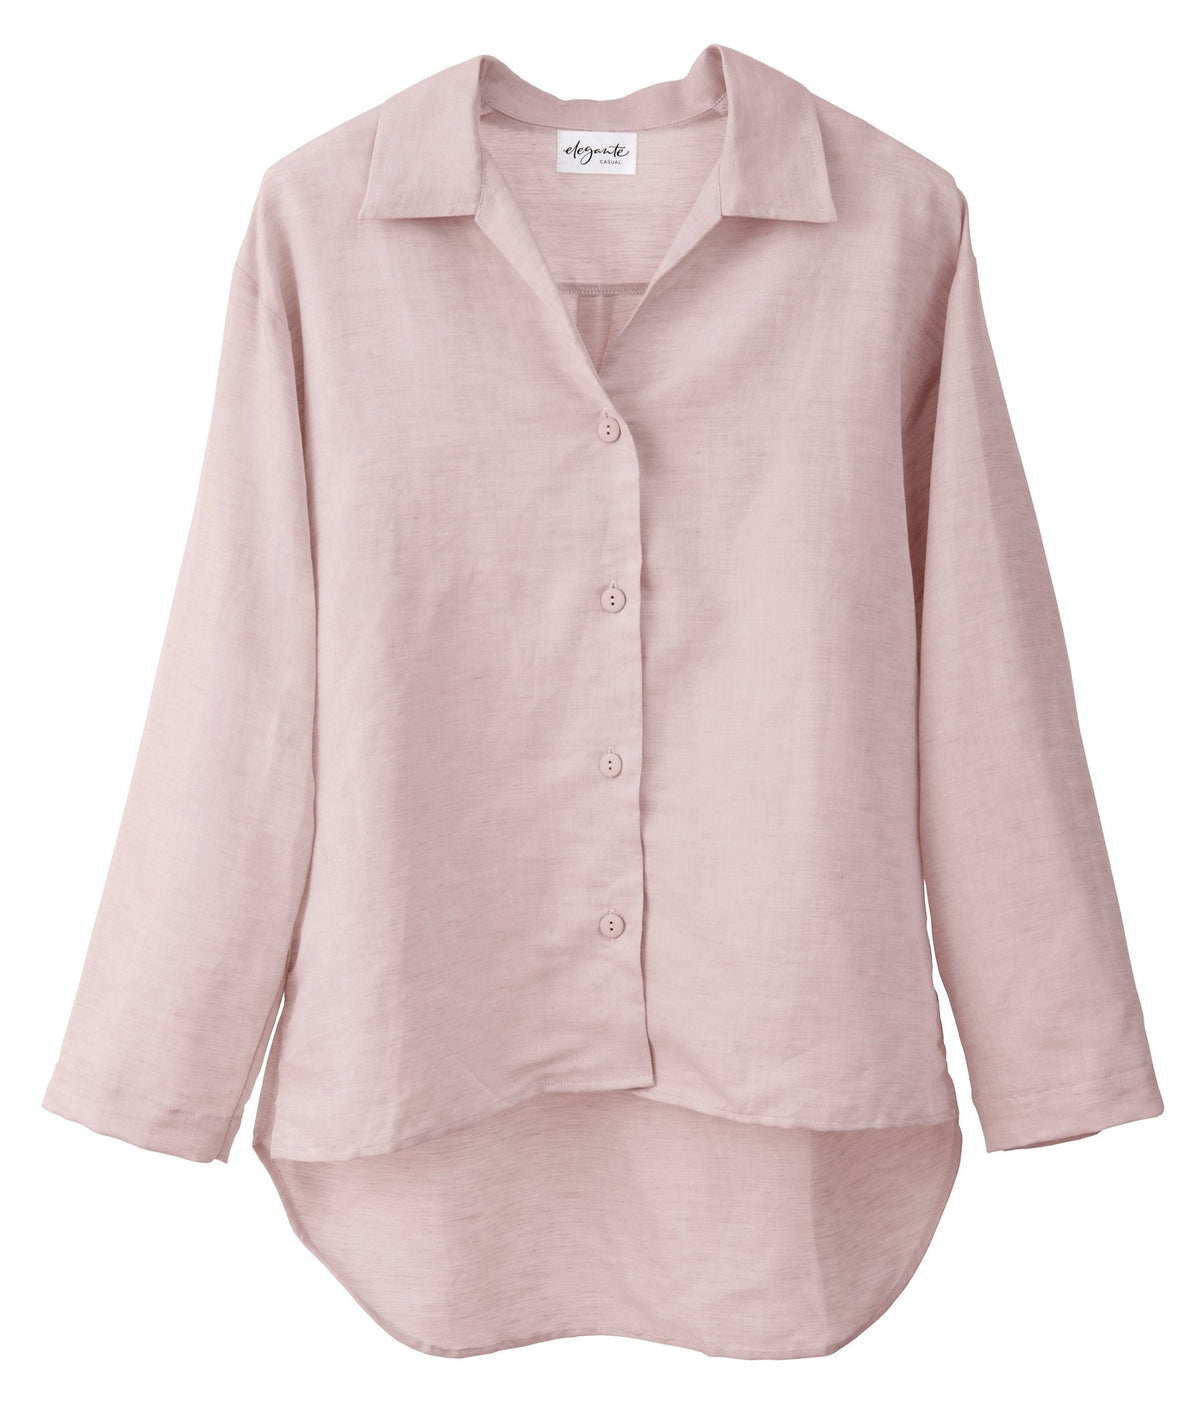 Halbleinen Homewear PJ Shirt in Rose Model Freisteller #farbe_Rosé